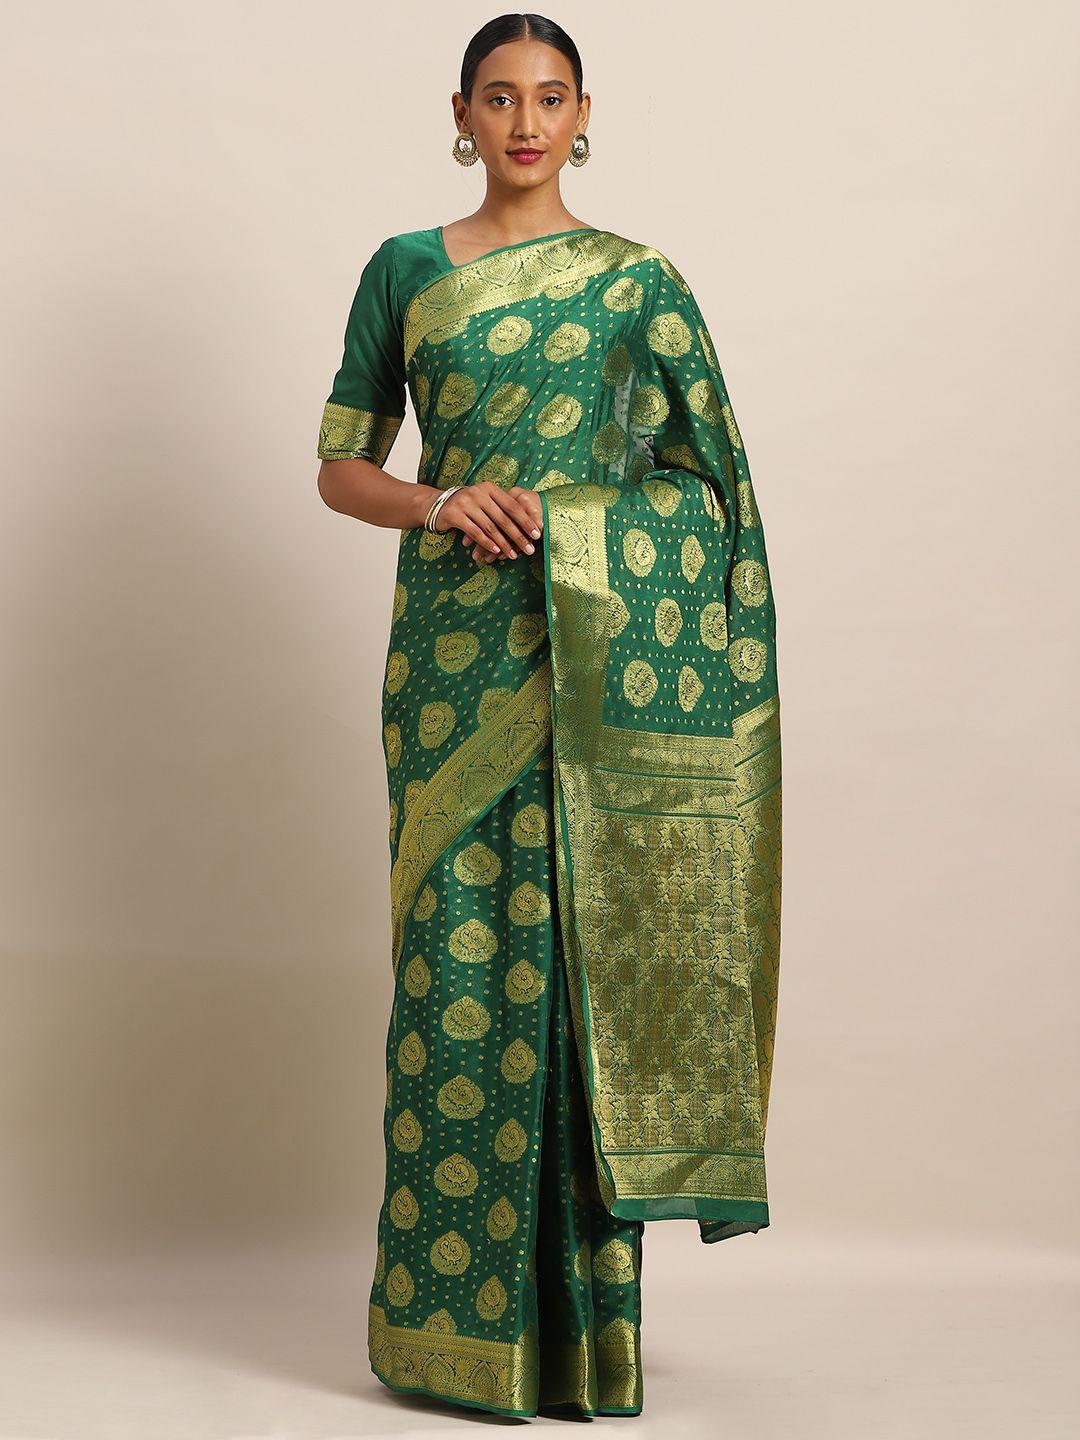 mitera green & gold-toned poly crepe woven design mysore silk saree